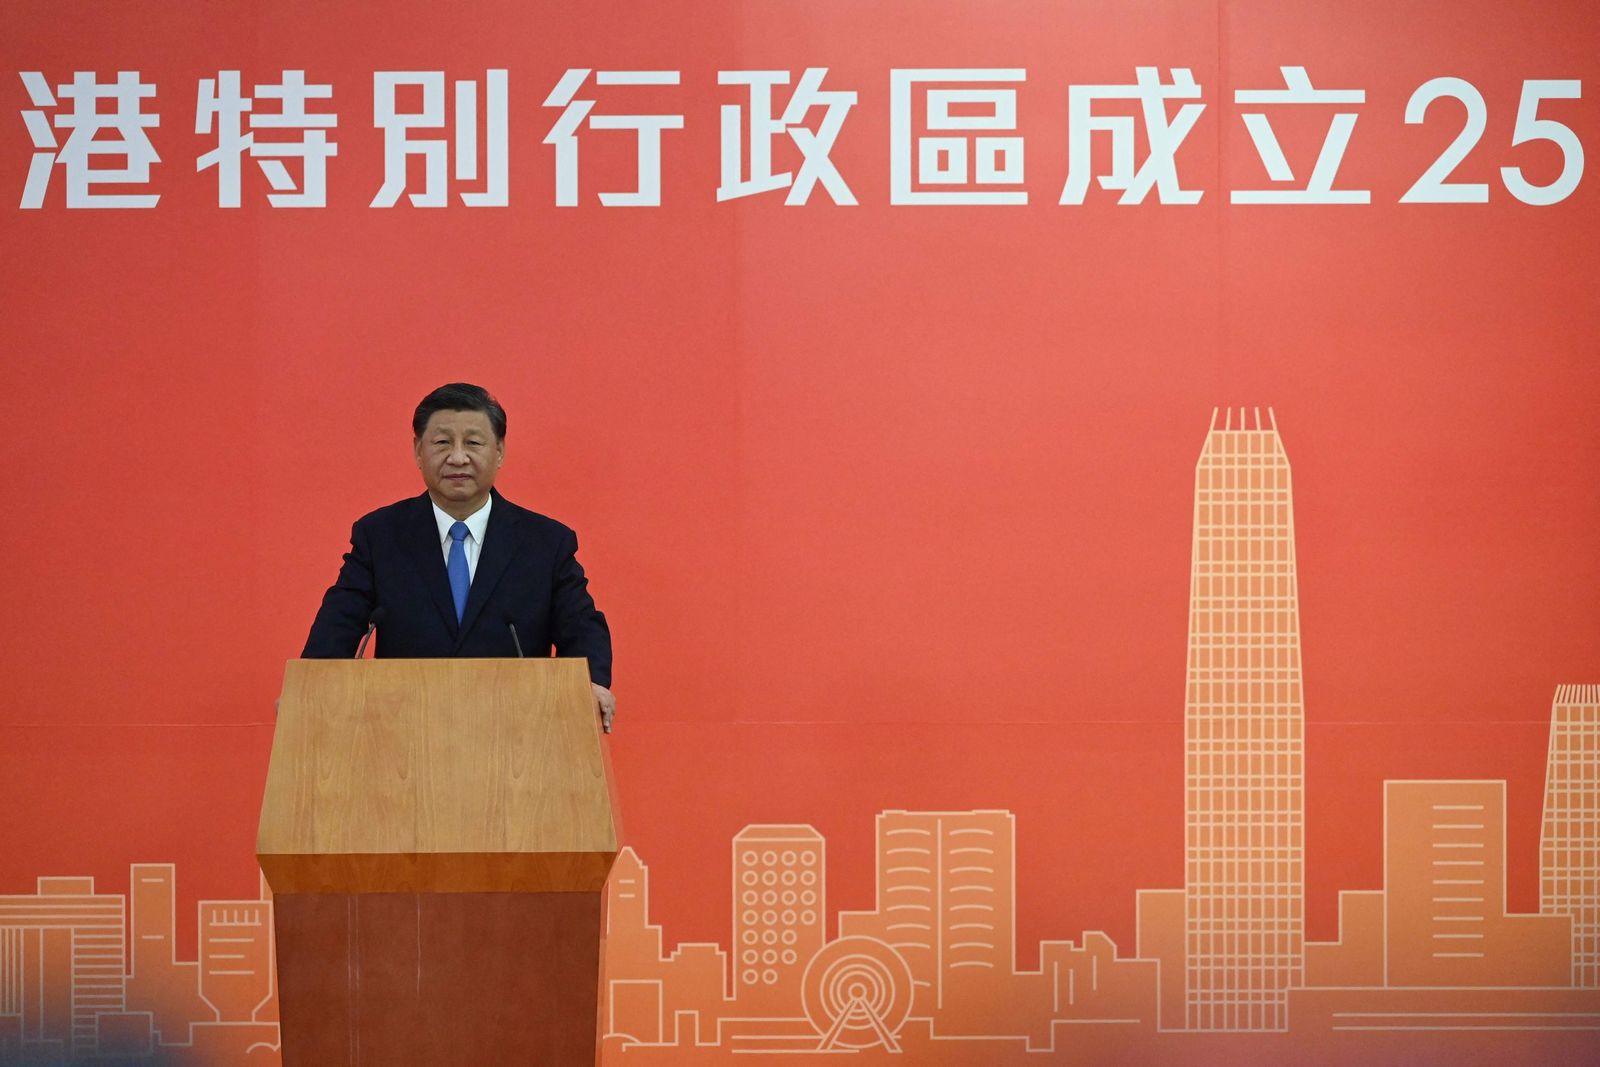 الرئيس الصيني شي جين بينج يتحدث في مؤتمر صحافي لدى وصوله إلى هونج كونج - 30 يونيو 2022 - AFP